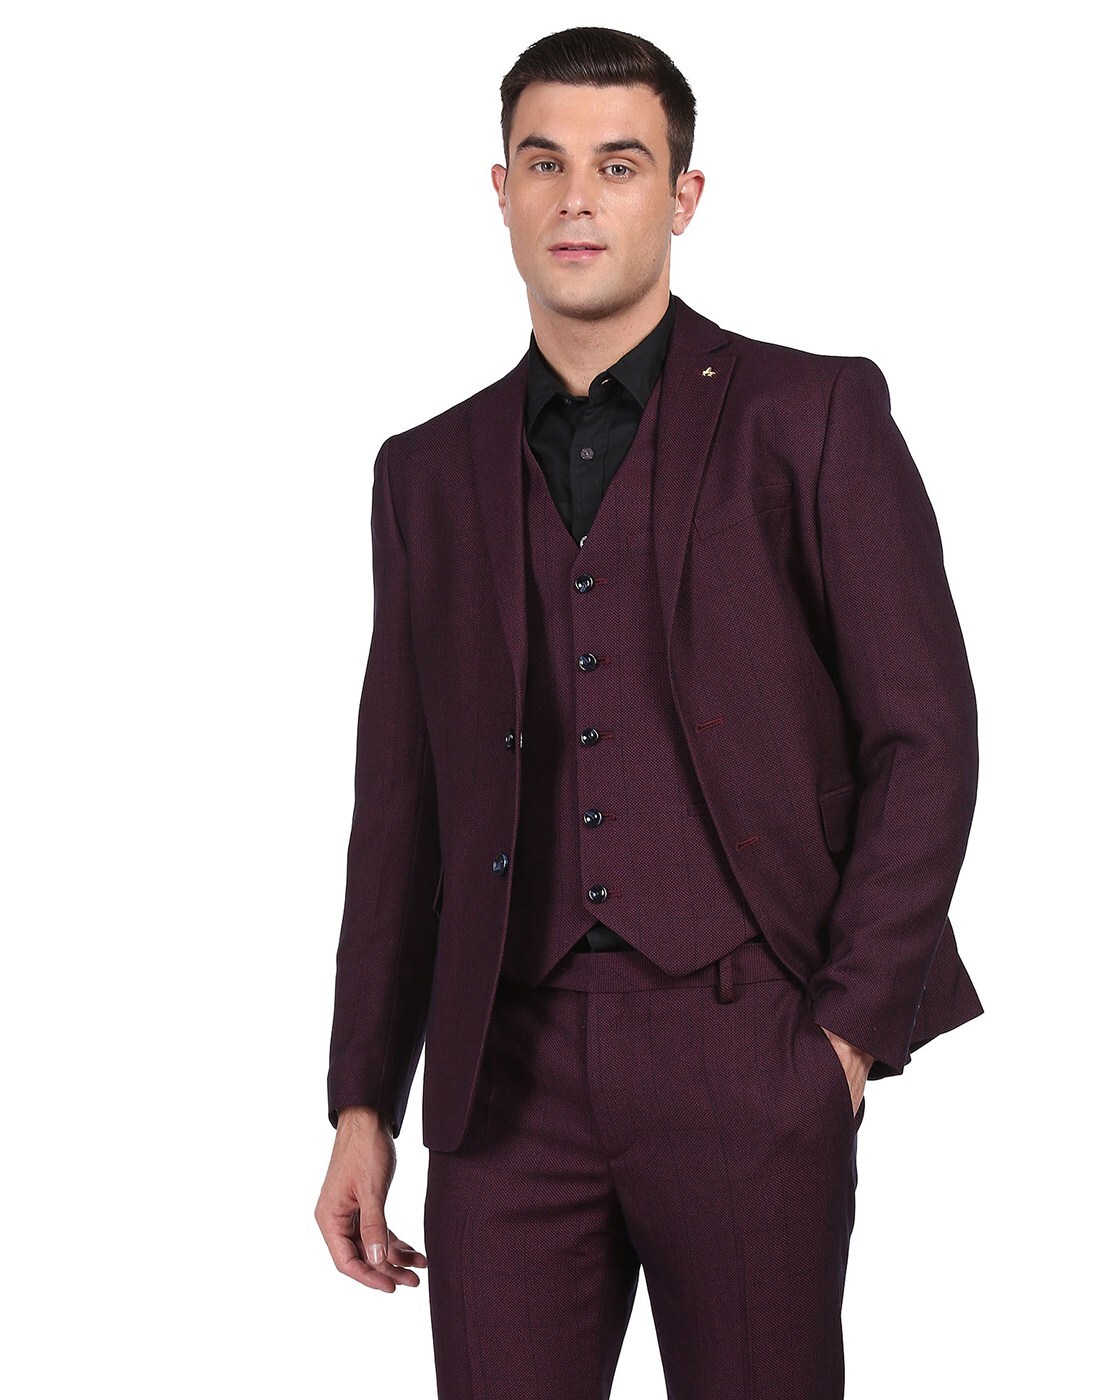 chenshijiu Men's Suit Slim Fit 3-Piece Suit Blazer Dress Business Wedding  Party Jacket Vest & Pants Wine Red S : Amazon.in: Fashion